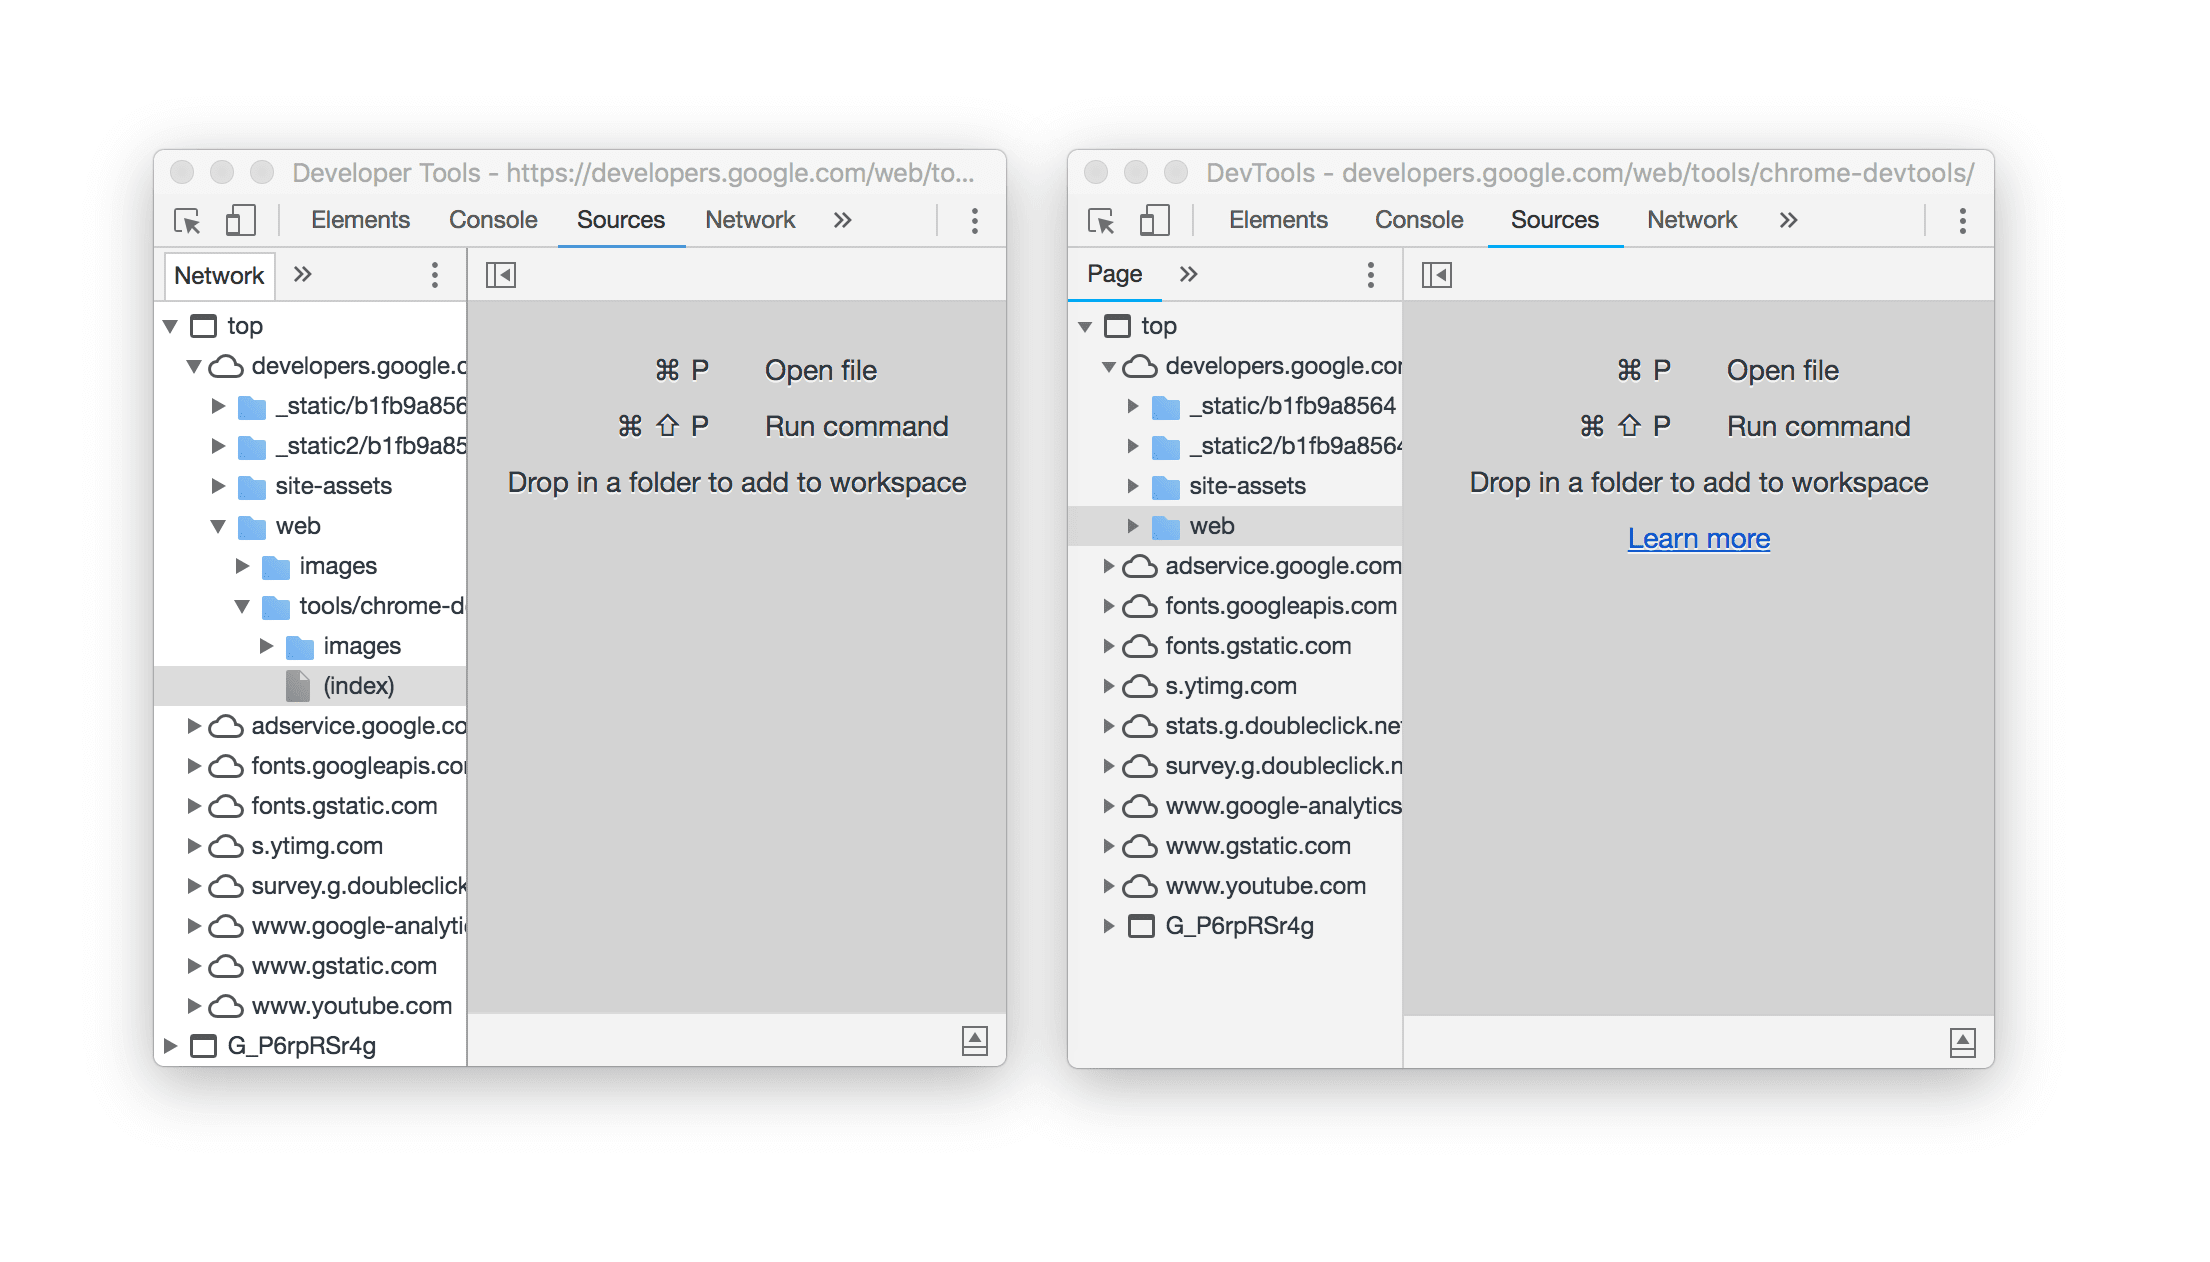 نافذتان من أدوات مطوّري البرامج جنبًا إلى جنب يظهران فيه تغيير الاسم.